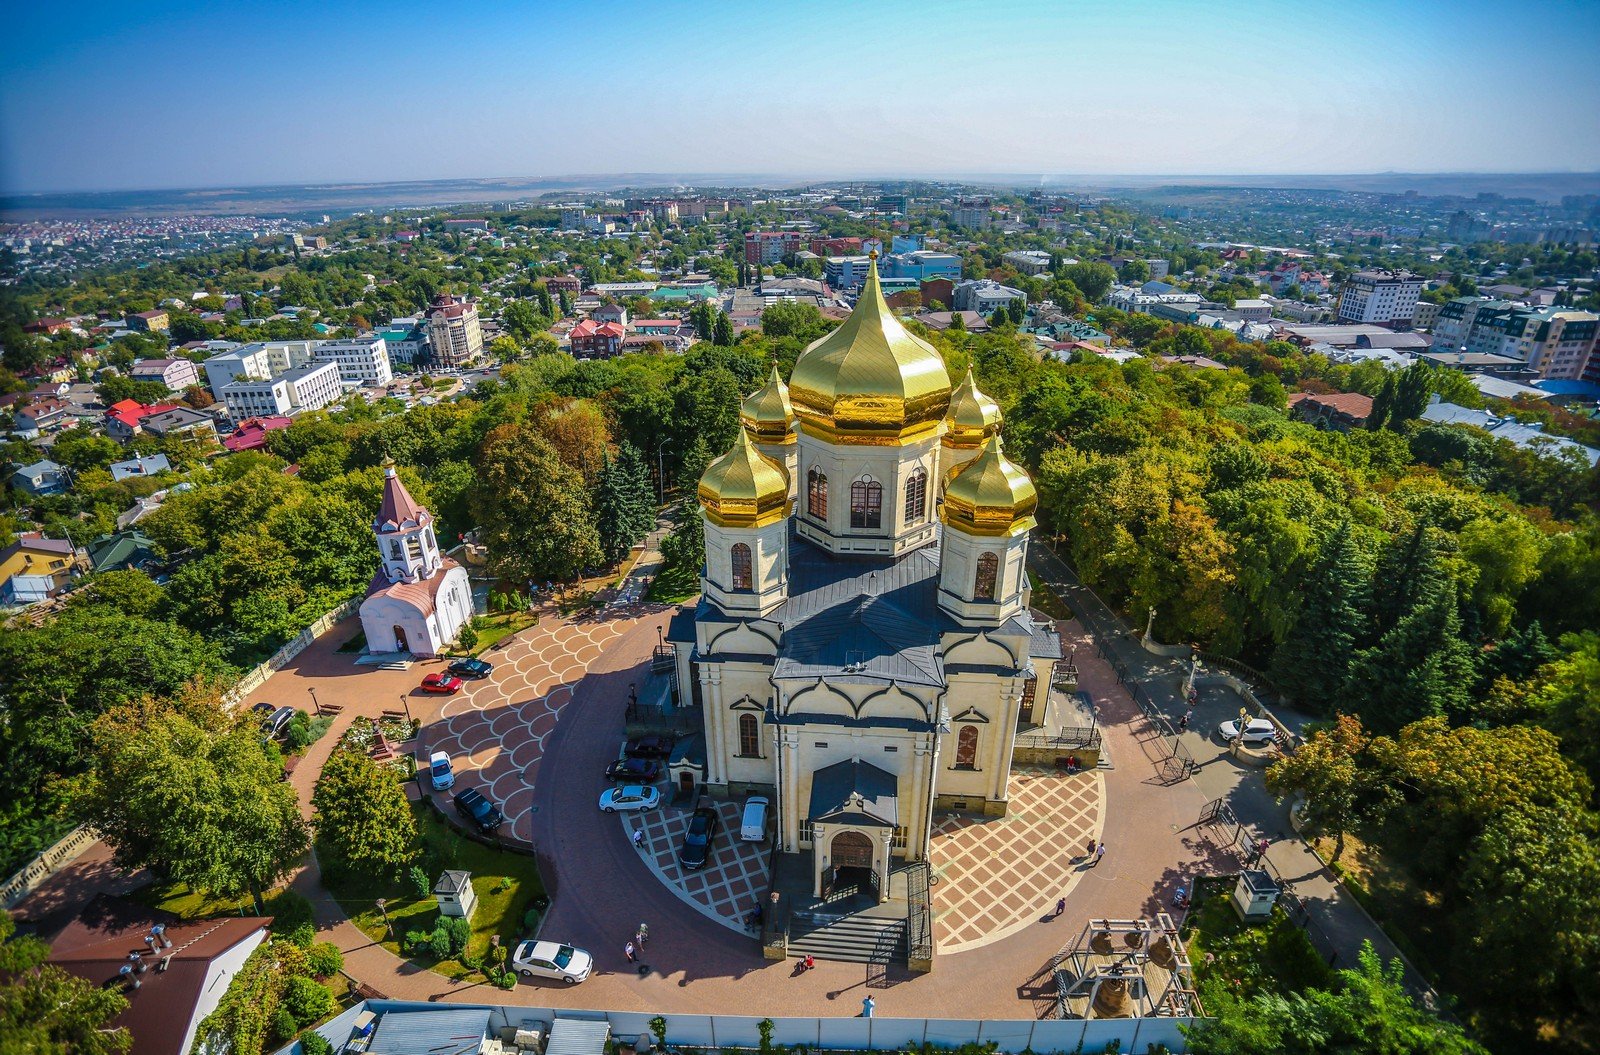 Кафедральный собор Ставрополь